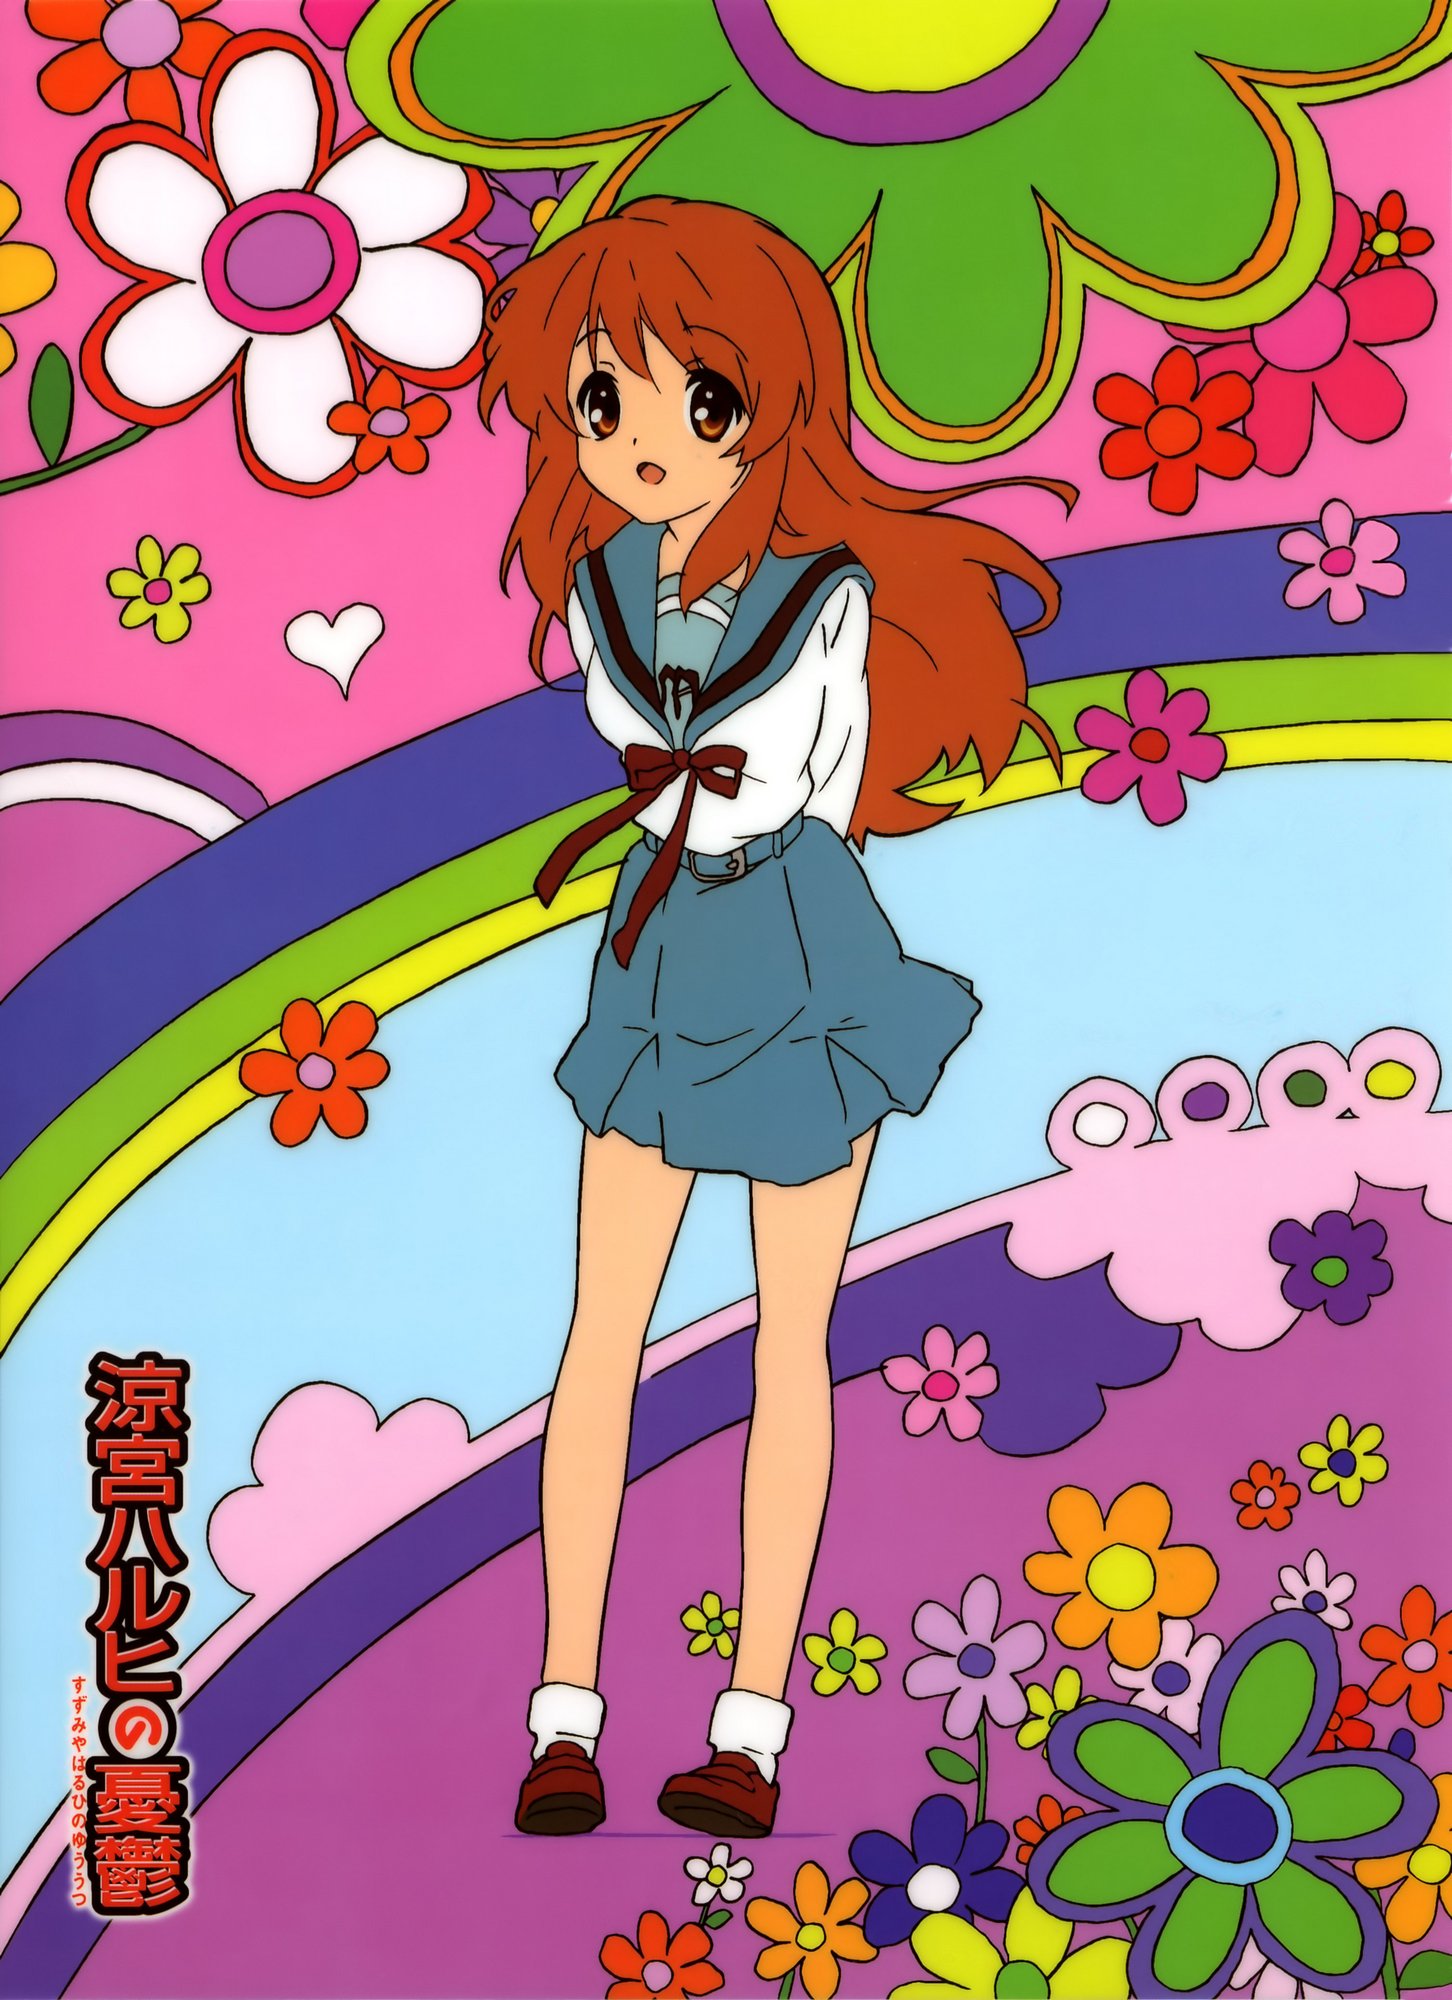 Mikuru Asahina, from the anime series 'The Melancholy of Haruhi Suzumiya'.